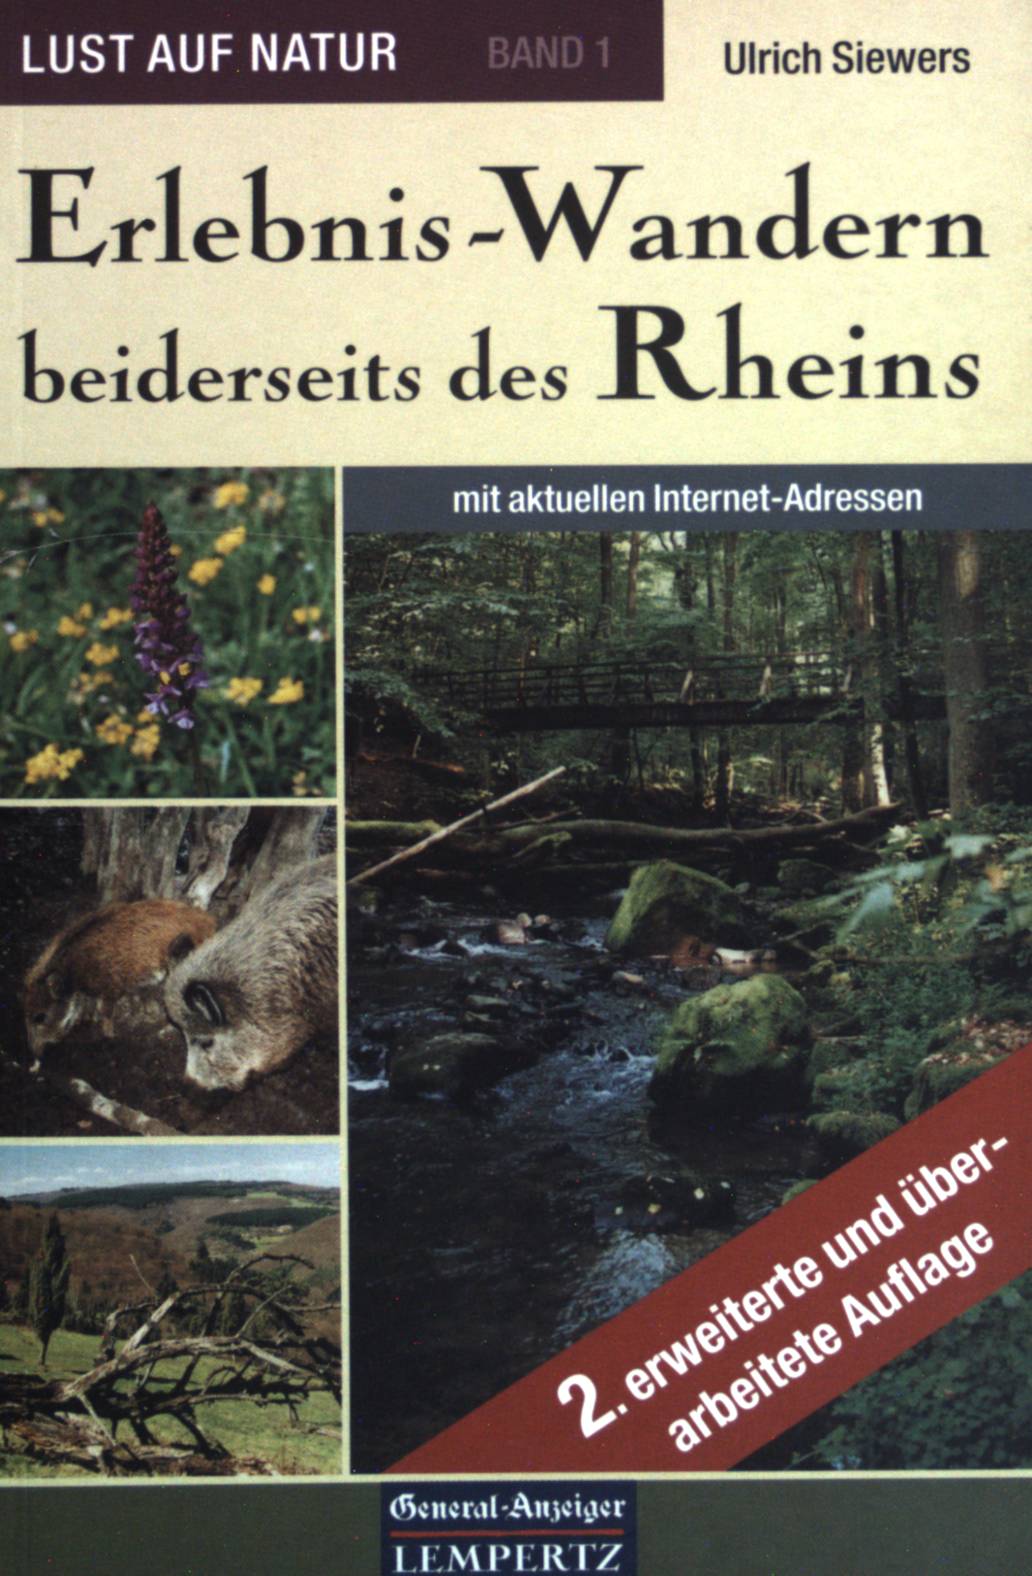 Erlebnis-Wandern beiderseits des Rheins. Lust auf Natur ; Bd. 1; General-Anzeiger - Siewers, Ulrich